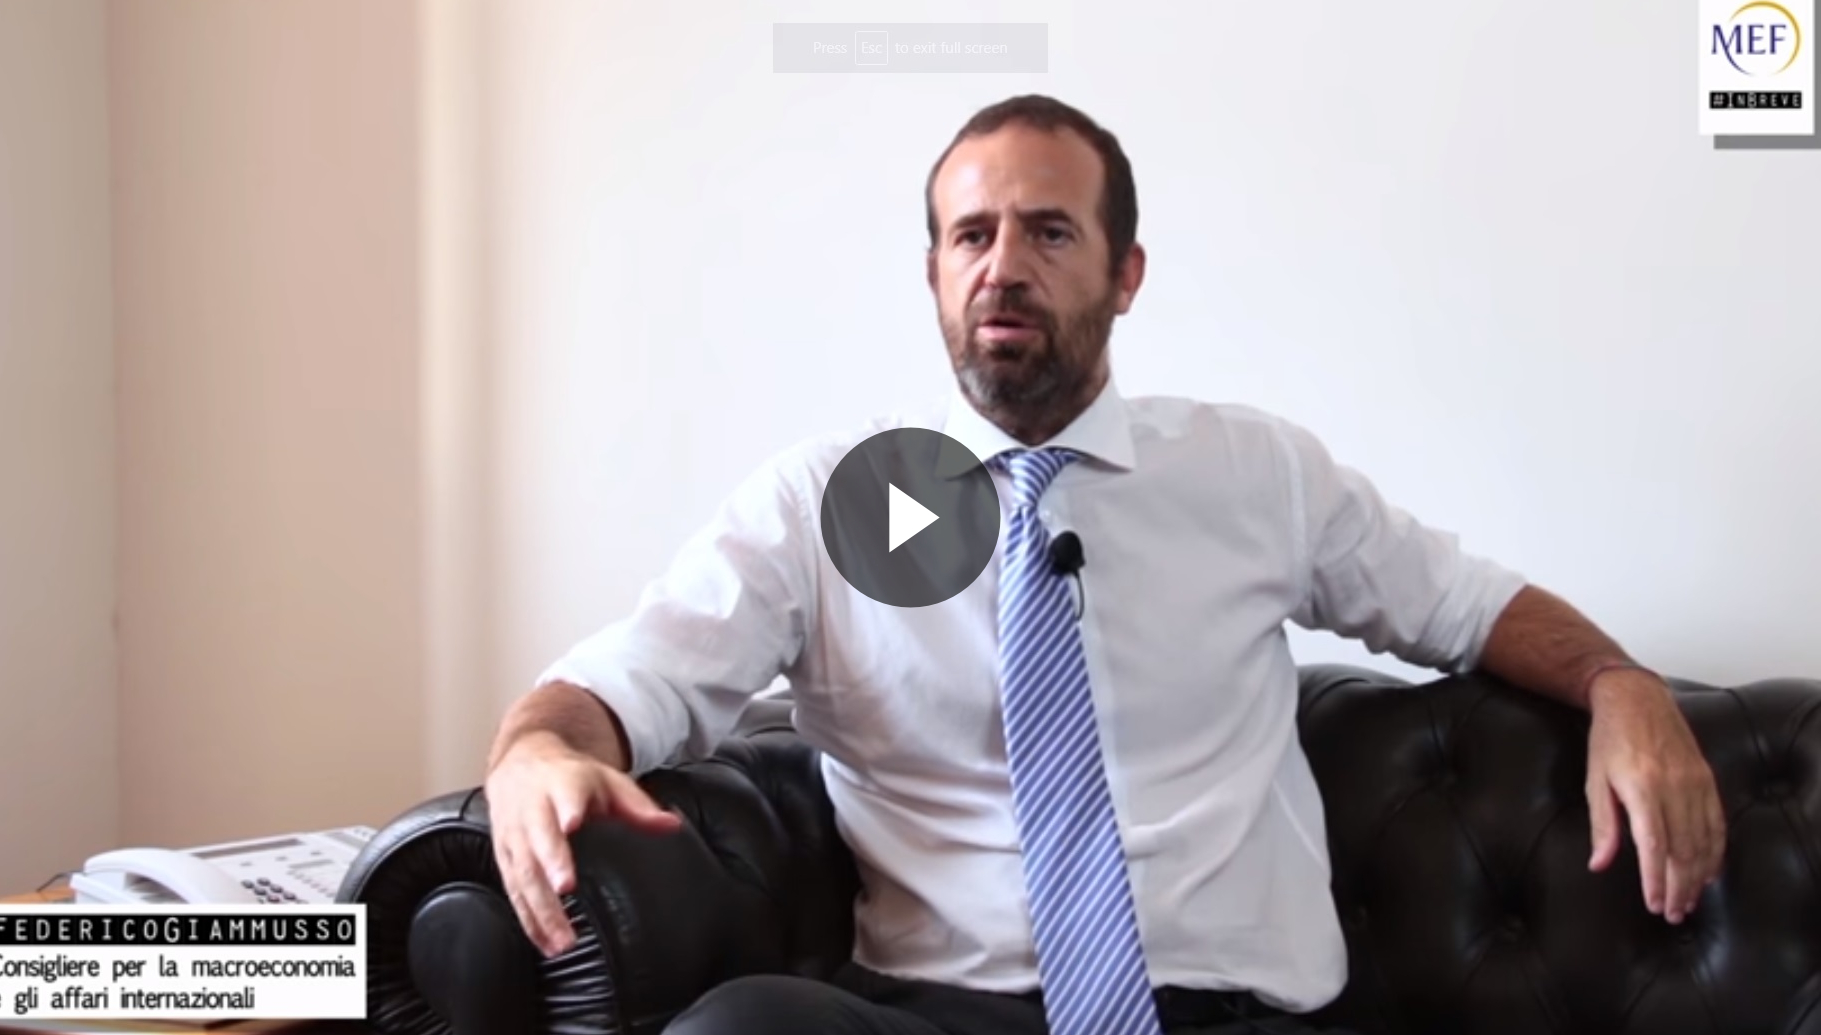 Il consigliere Giammusso spiega la proposta del fondo europeo per i disoccupati - Vai al video